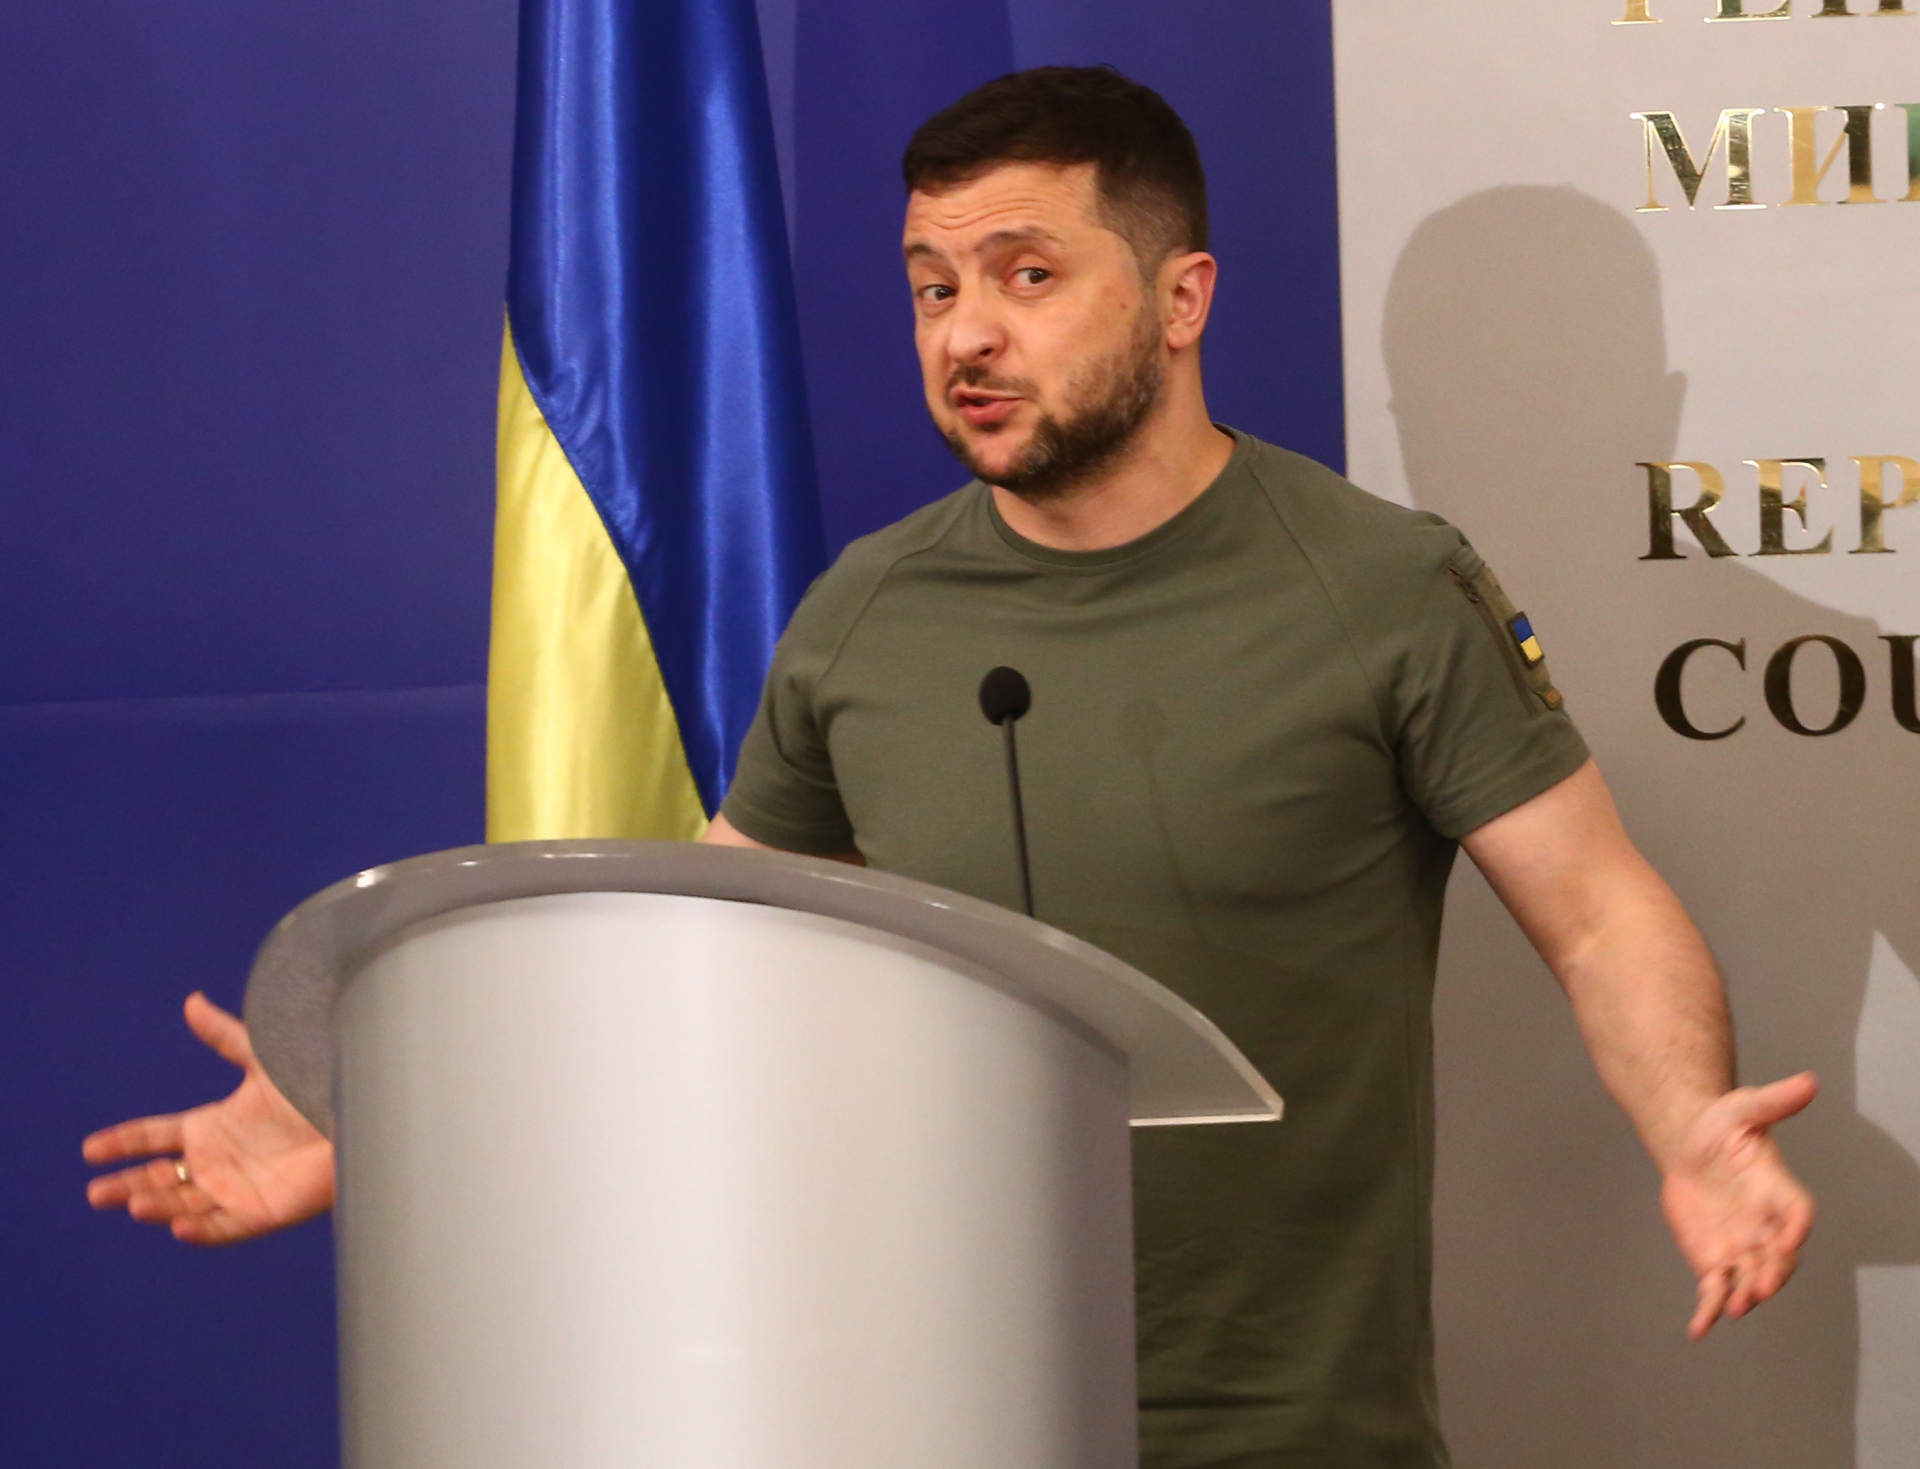 Трима на всеки четирима украинци винят Зеленски за корупцията в страната